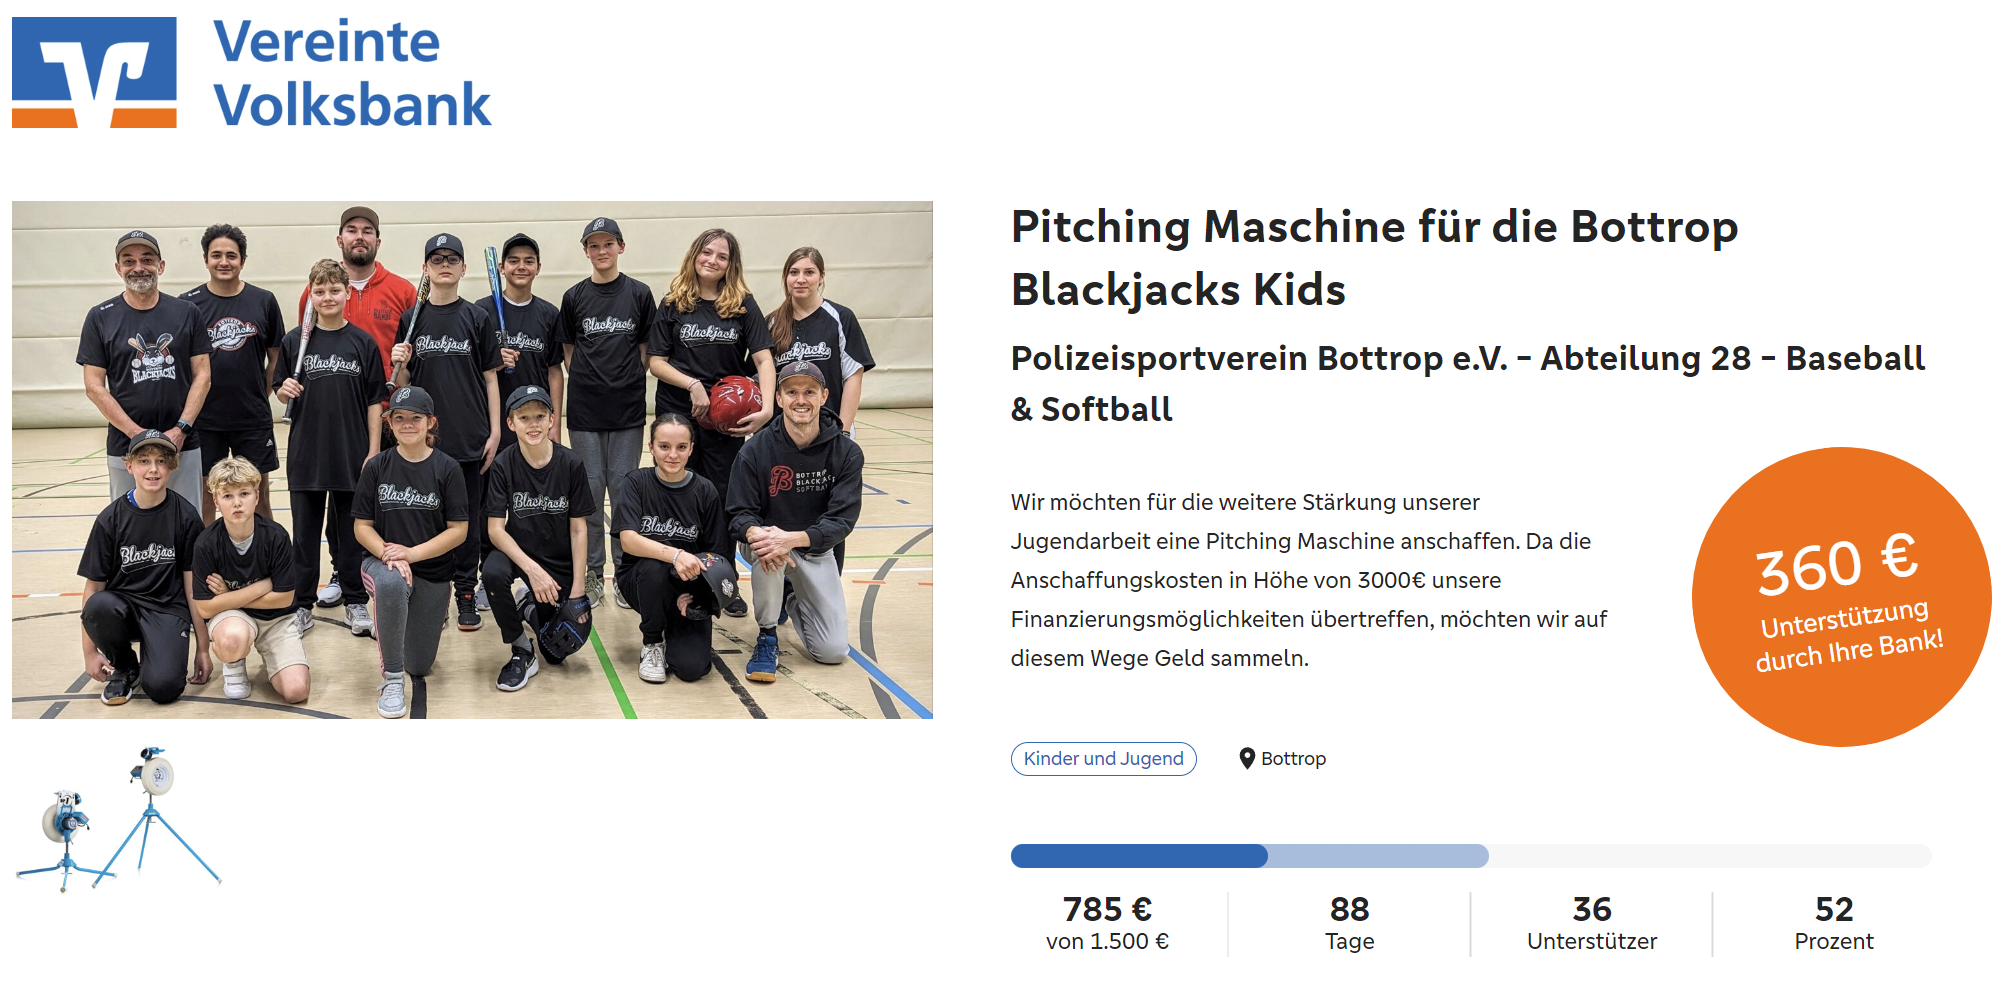 Crowdfunding für eine Pitching Maschine